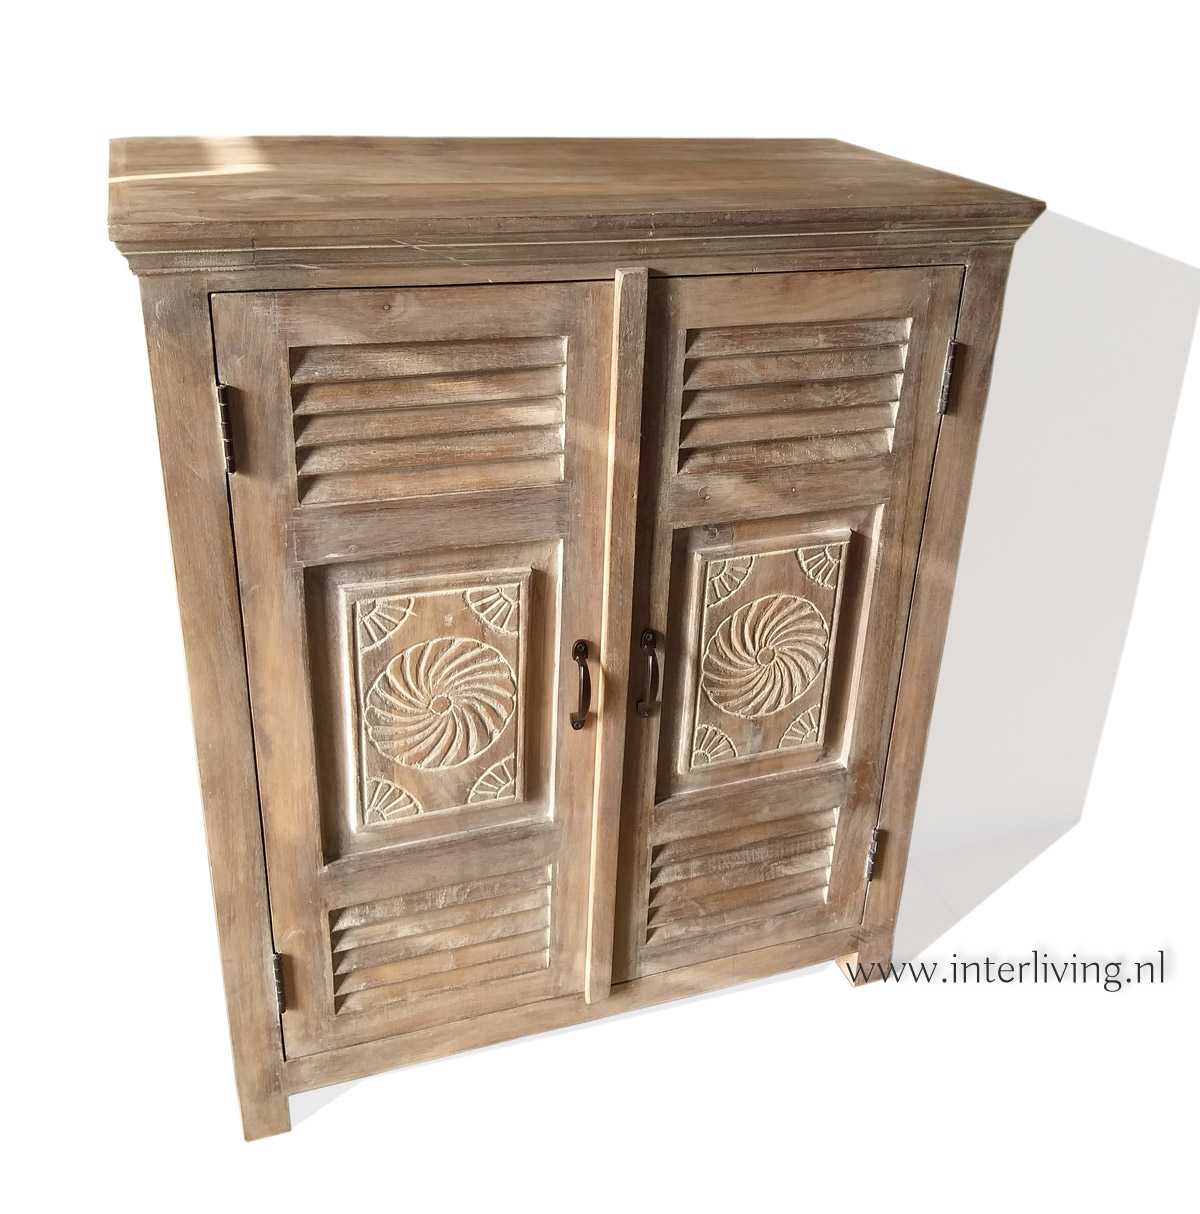 weer band binnenvallen Verweerde houten kast met deur luiken in mediterraanse / Ibiza stijl